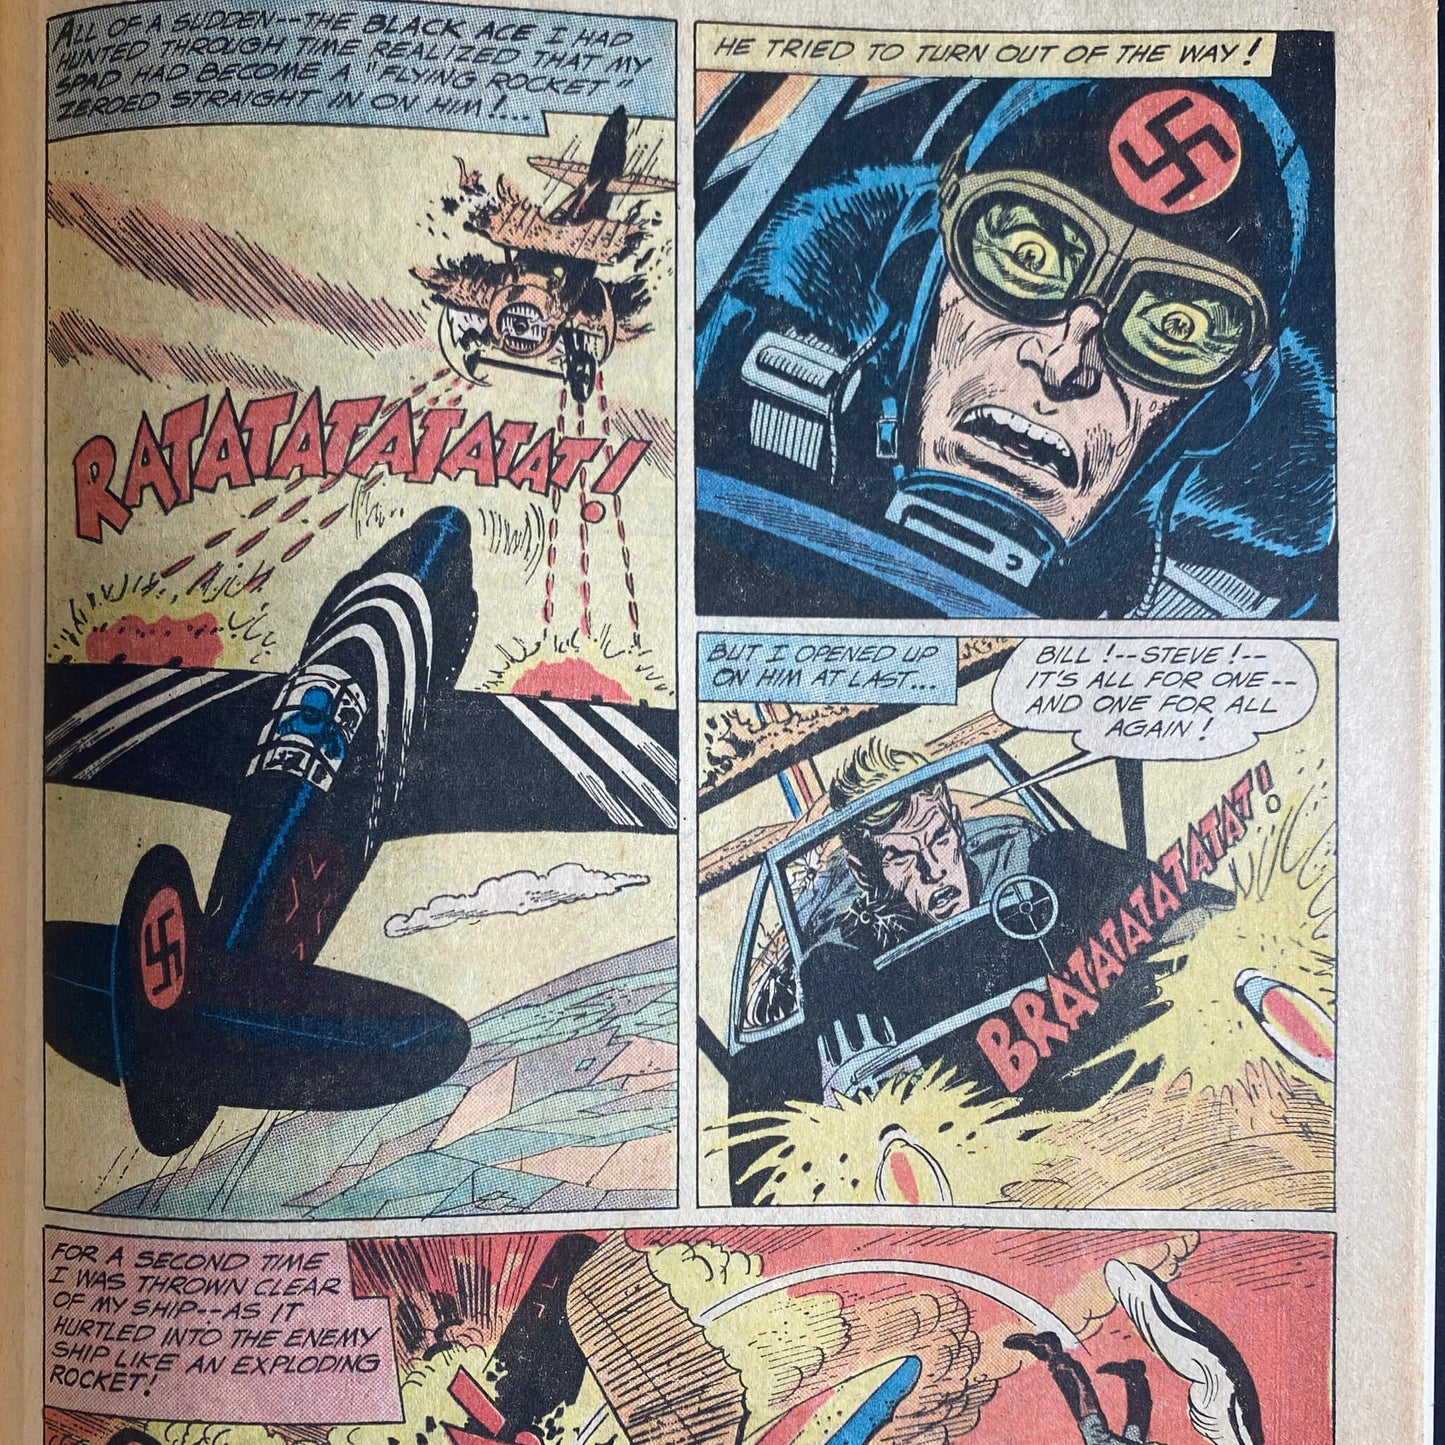 Weird War Tales #4 | 1972 | DC